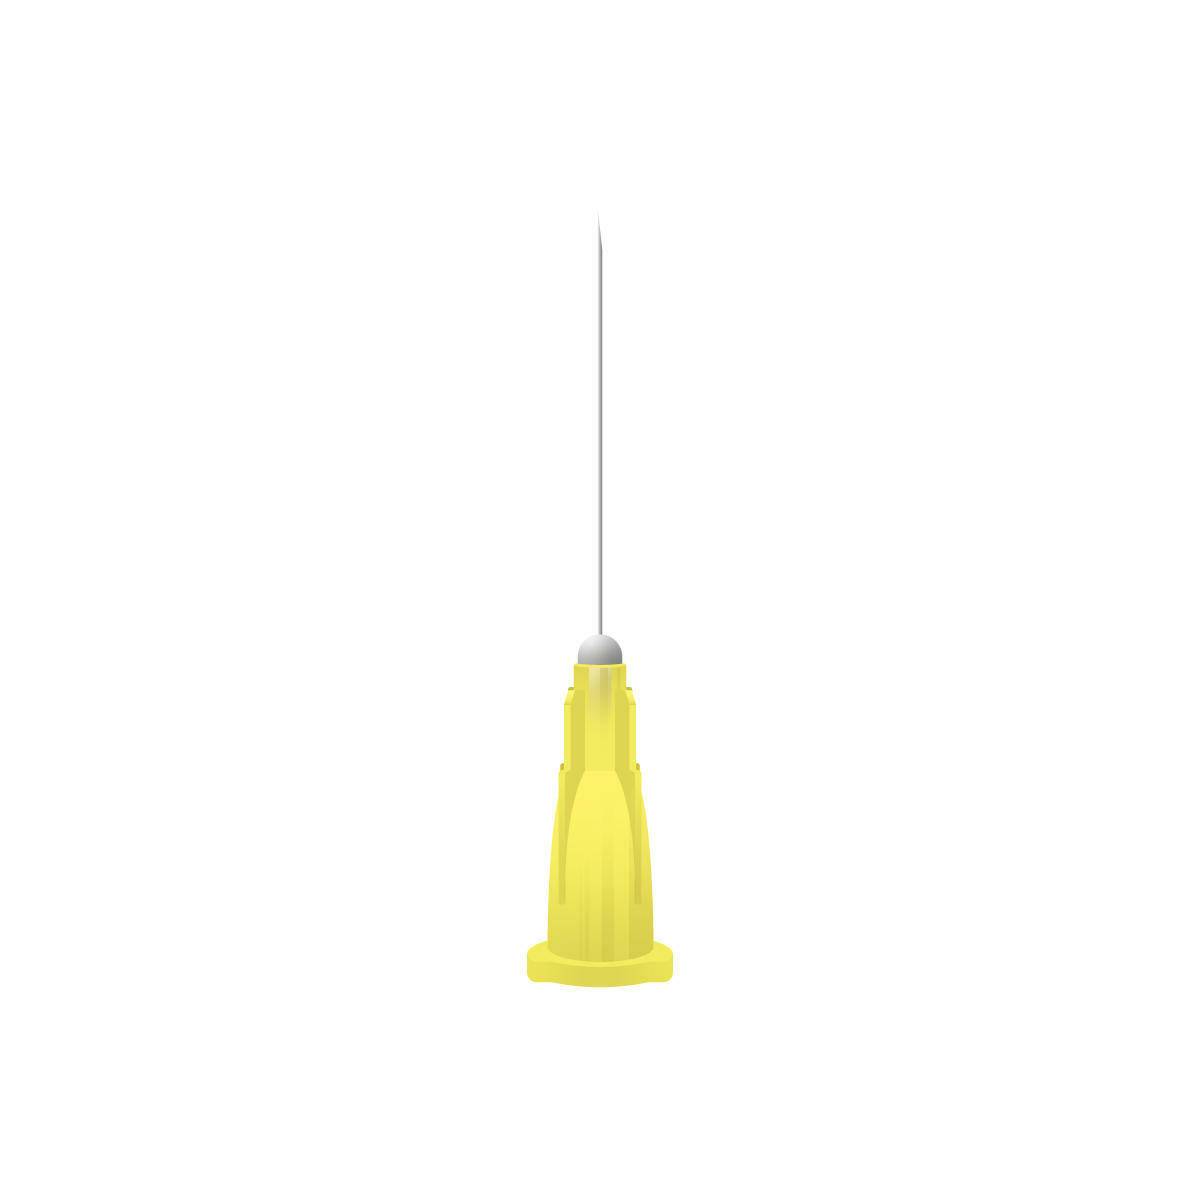 20g Yellow 1 inch Terumo Needles (25mm x 0.9mm) - UKMEDI